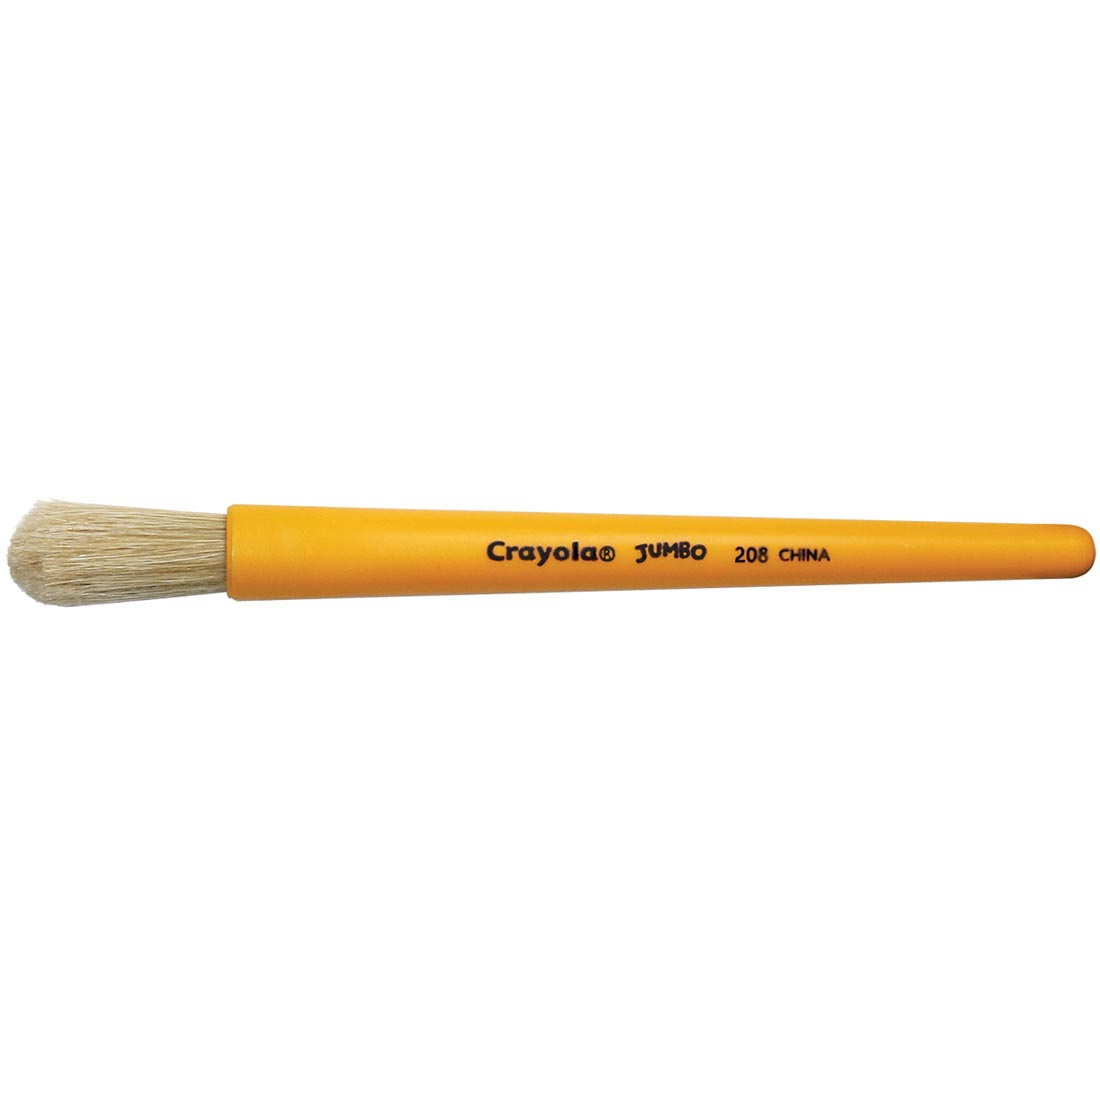 Crayola Jumbo Brush with white bristles and yellow handle